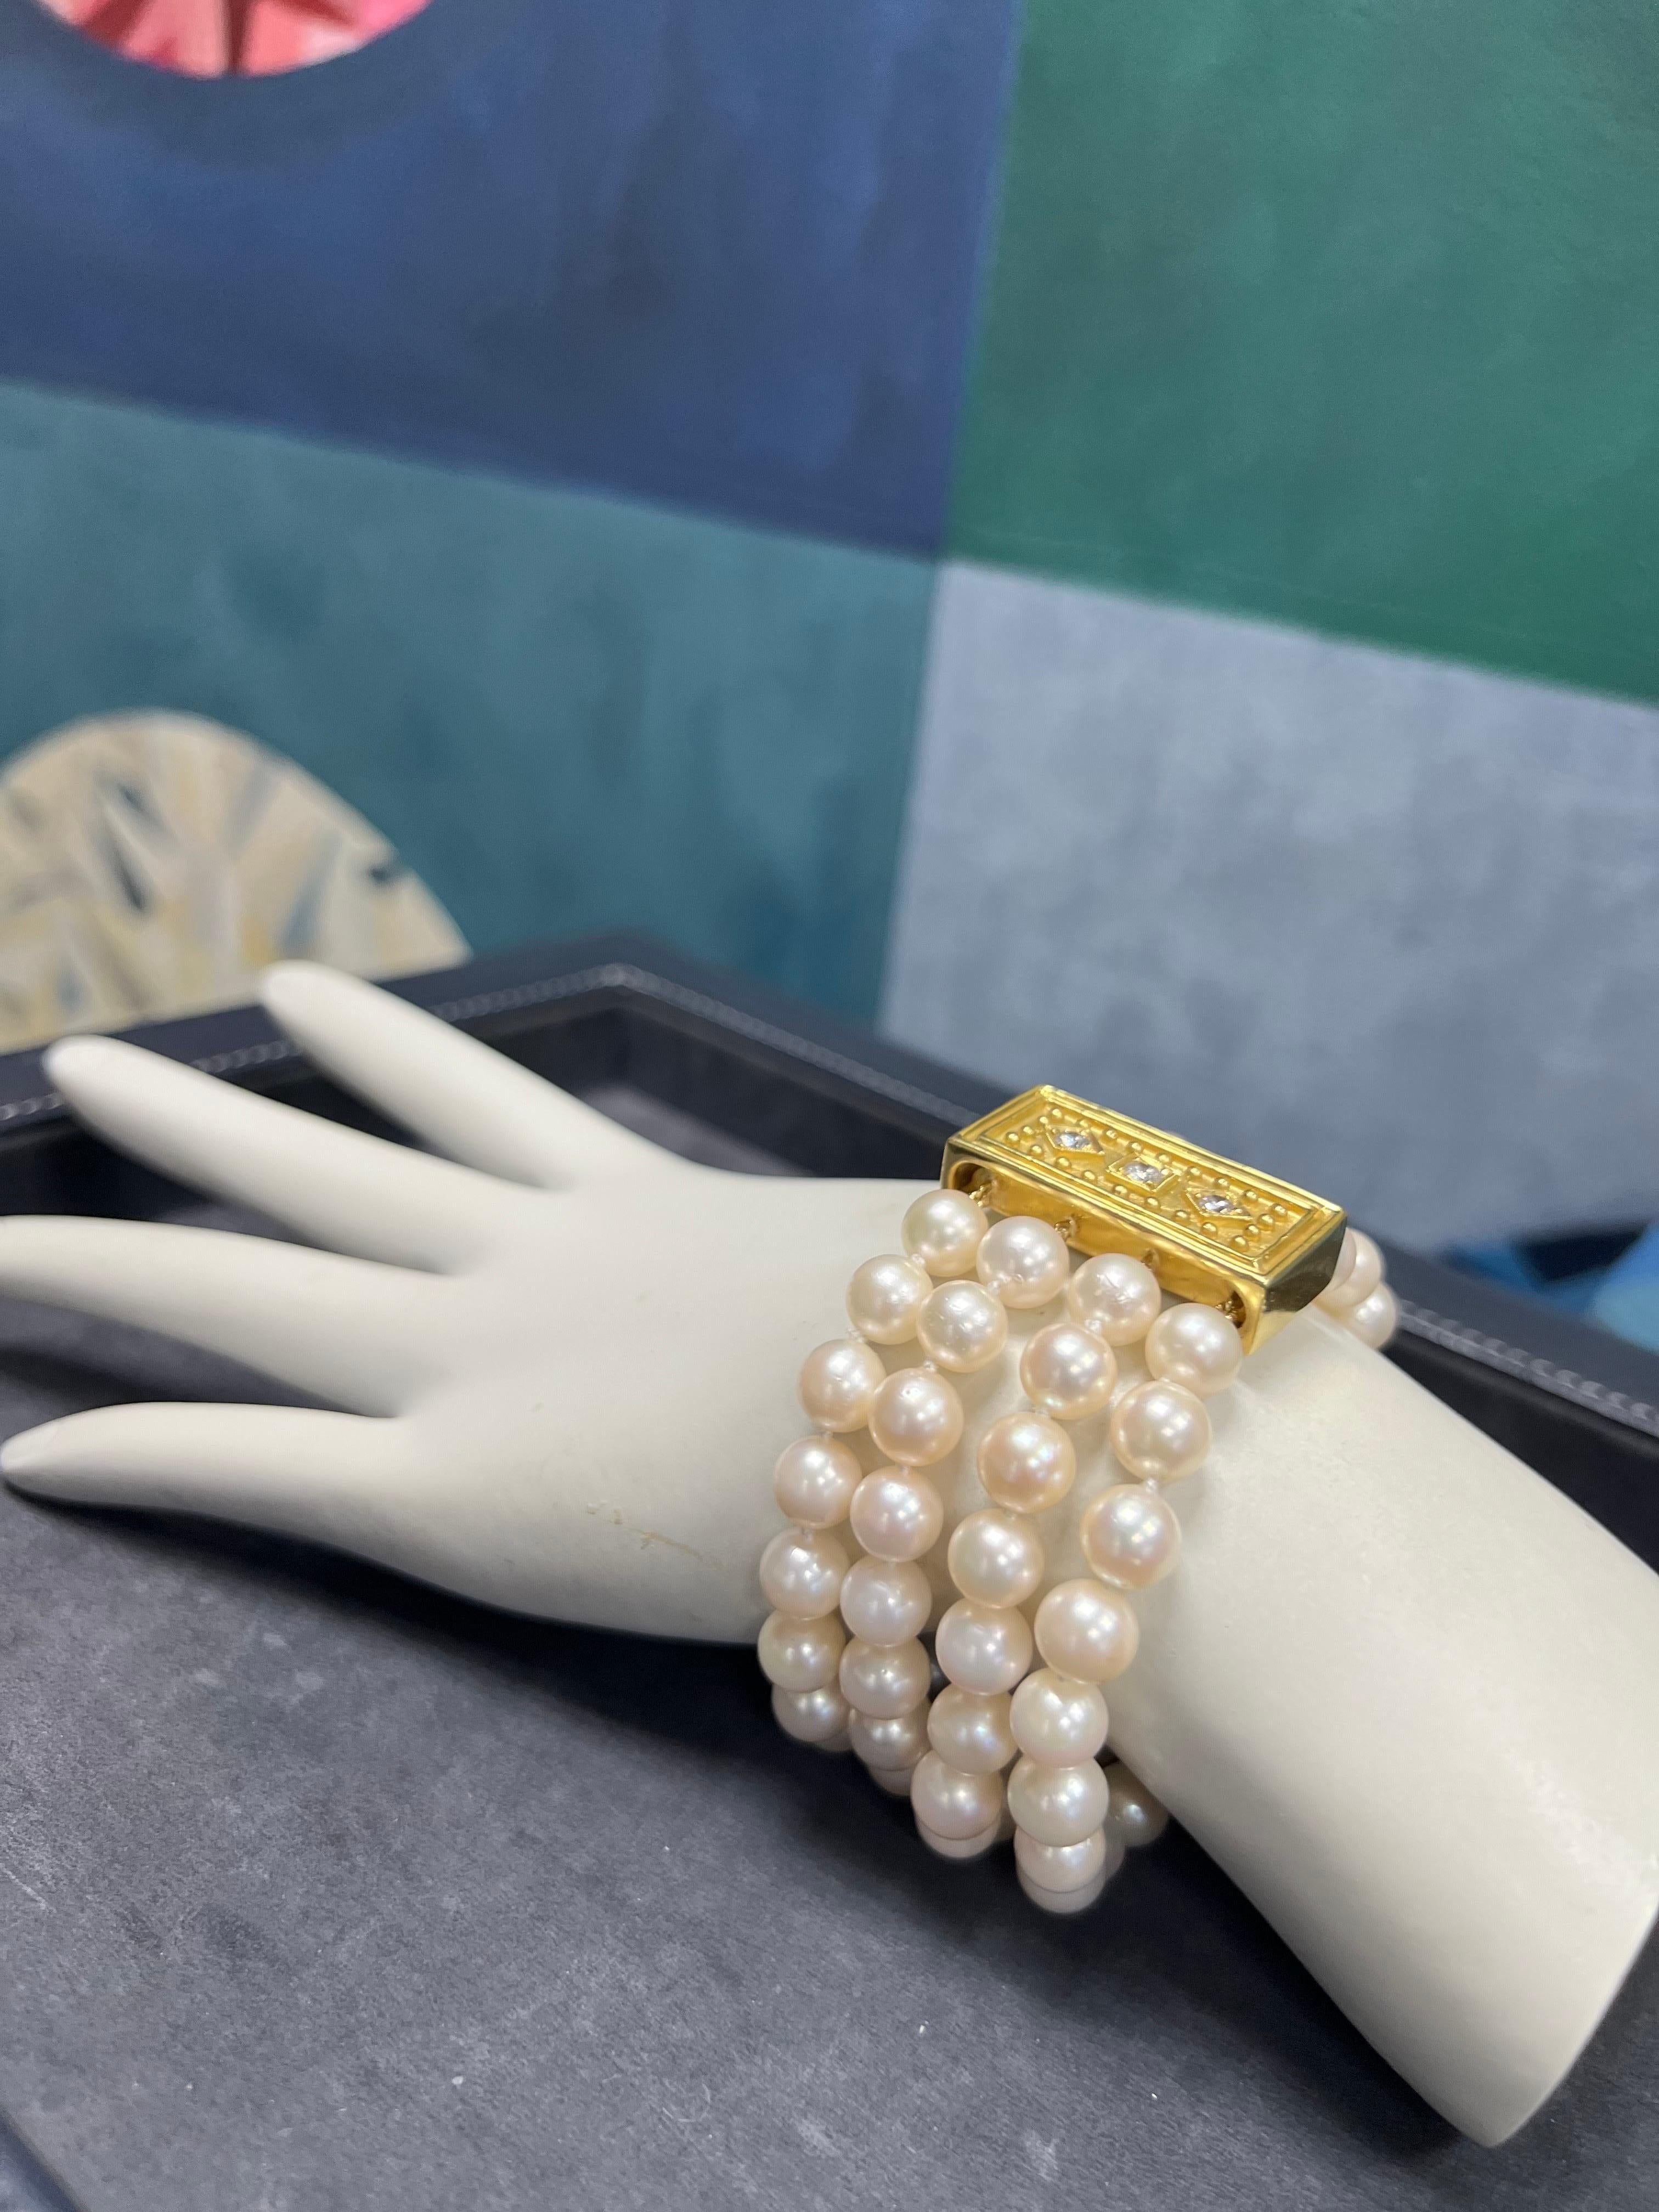 Ein prächtiges viersträngiges Armband aus Akoya-Zuchtperlen, CIRCA 1980. Jede der 80 Perlen misst ca. 7,5 mm im Durchmesser und hat einen tollen Glanz und Orient. Es gibt sehr subtile Oberflächenfehler, die aber nichts von der Schönheit des Stücks